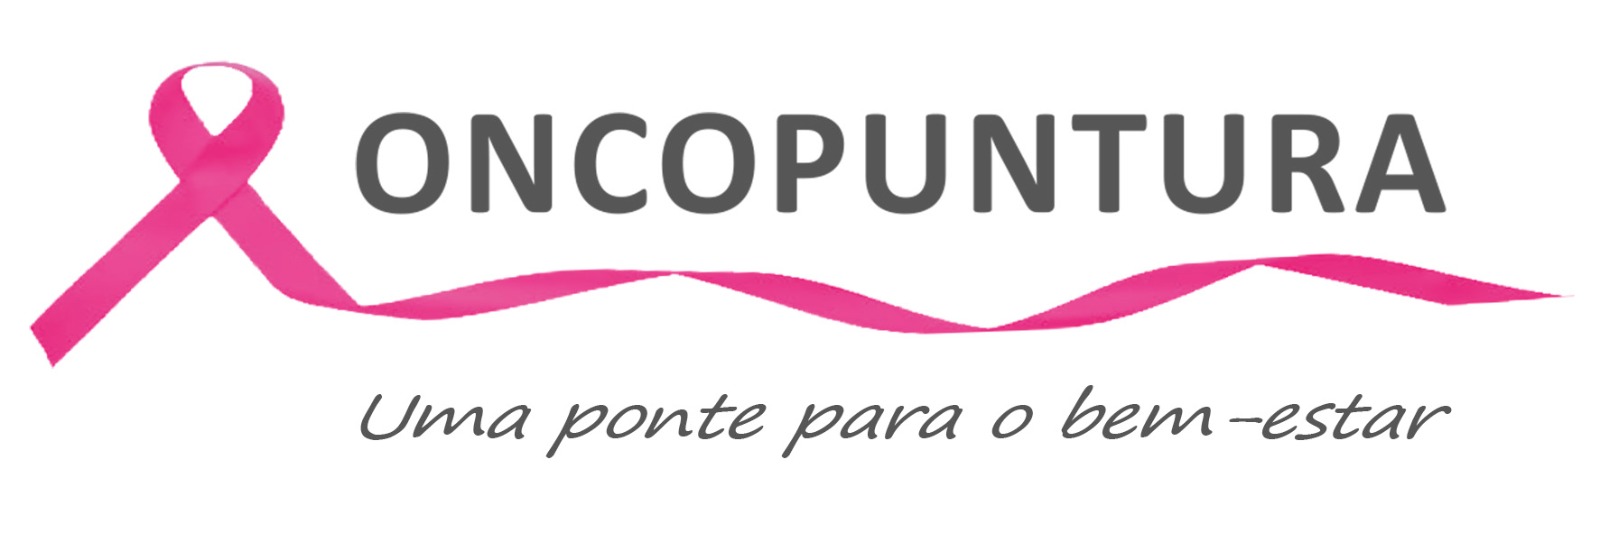 oncopuntura-logo